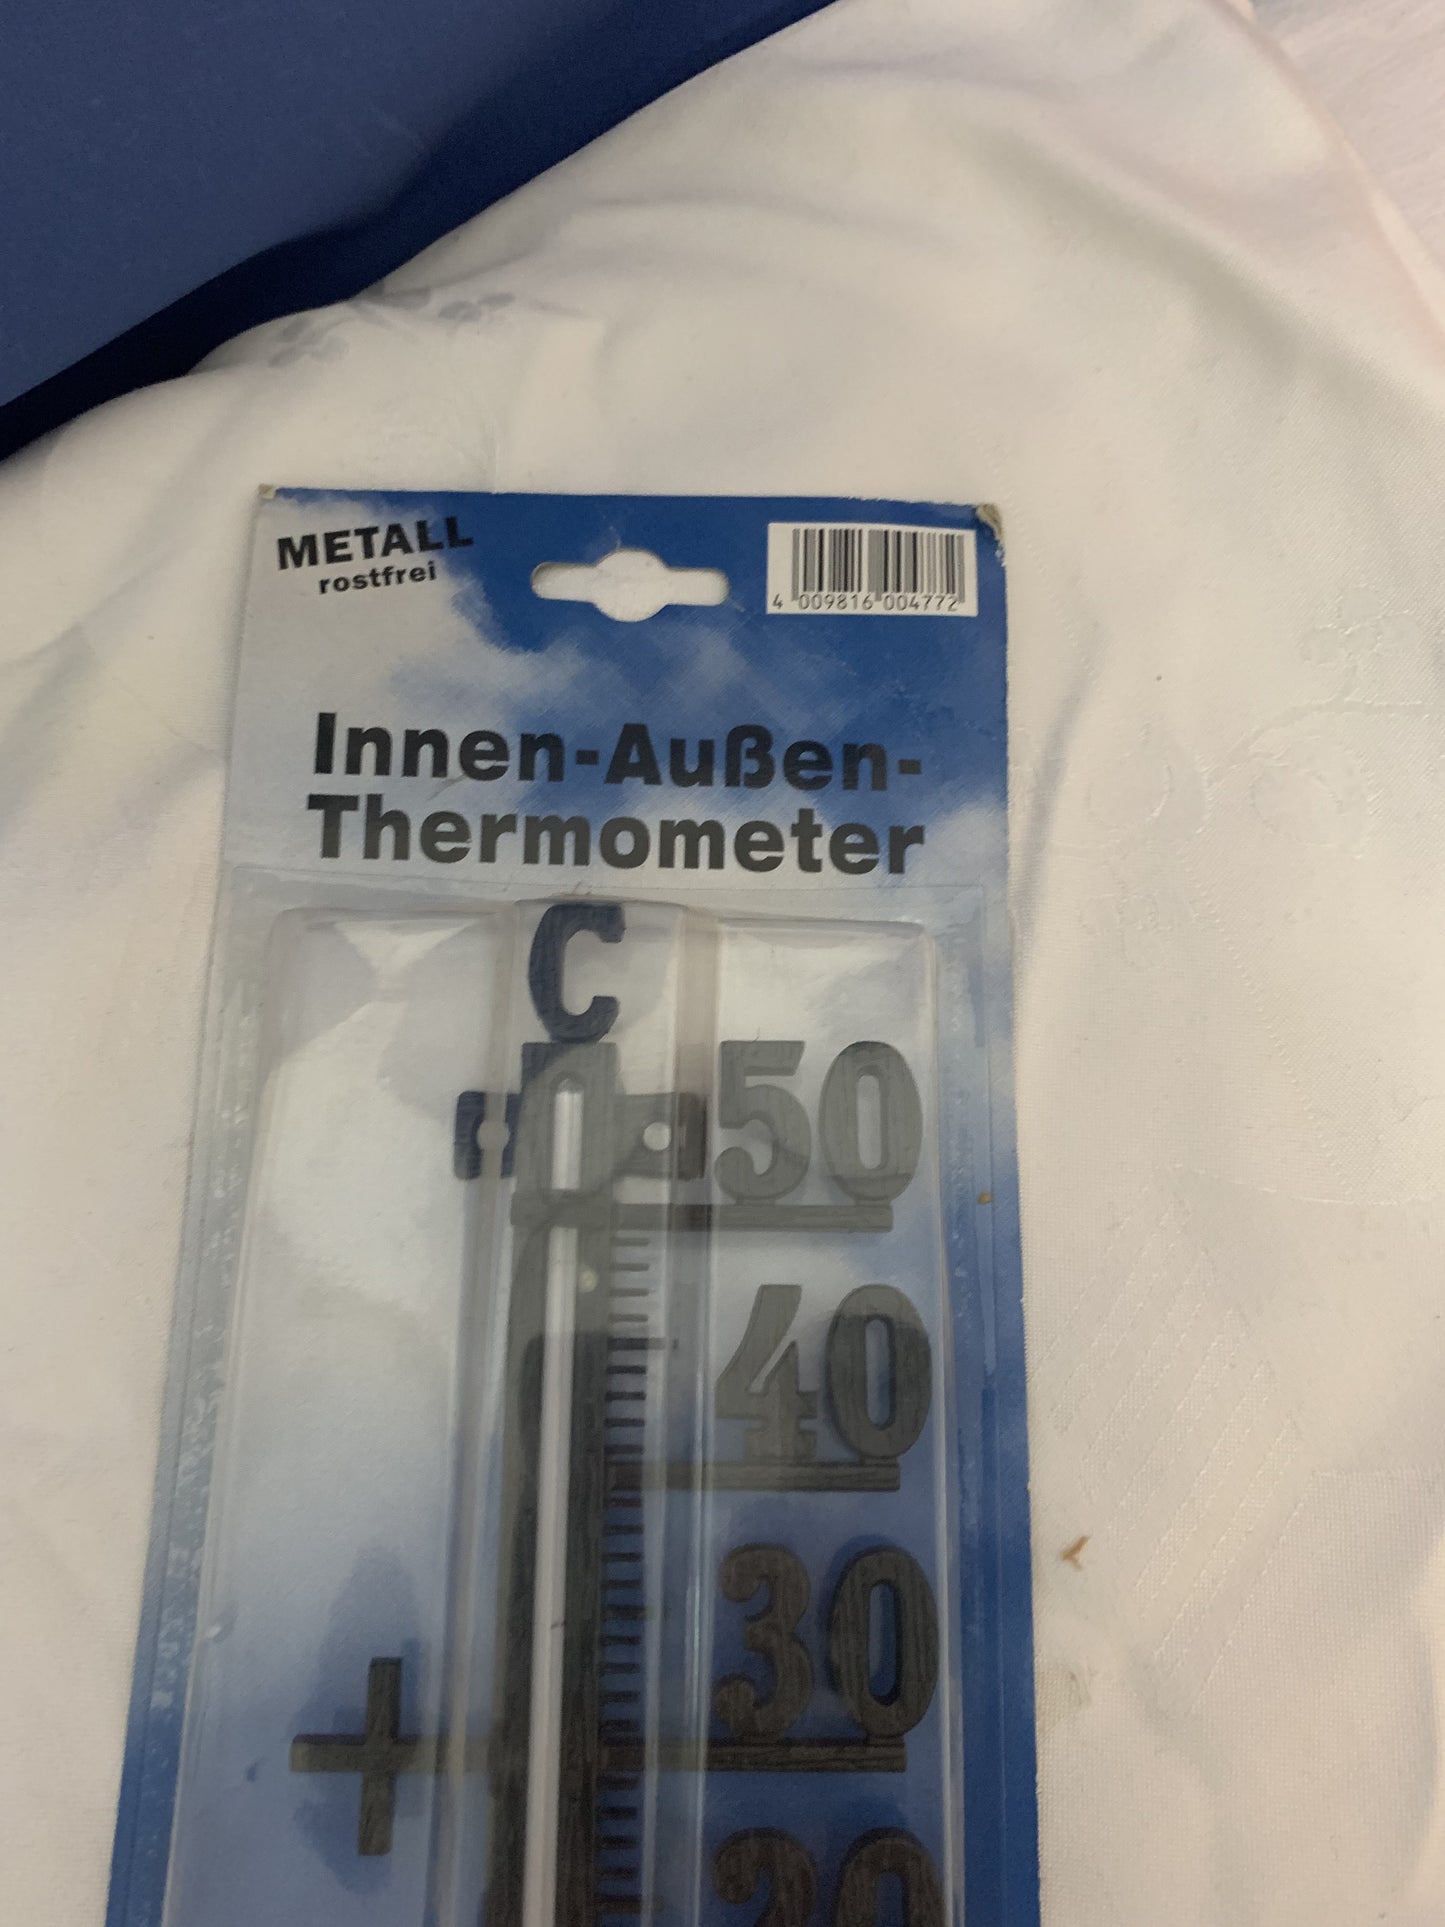 Innen-Außen  Thermometer, Metal Rostfrei, neu